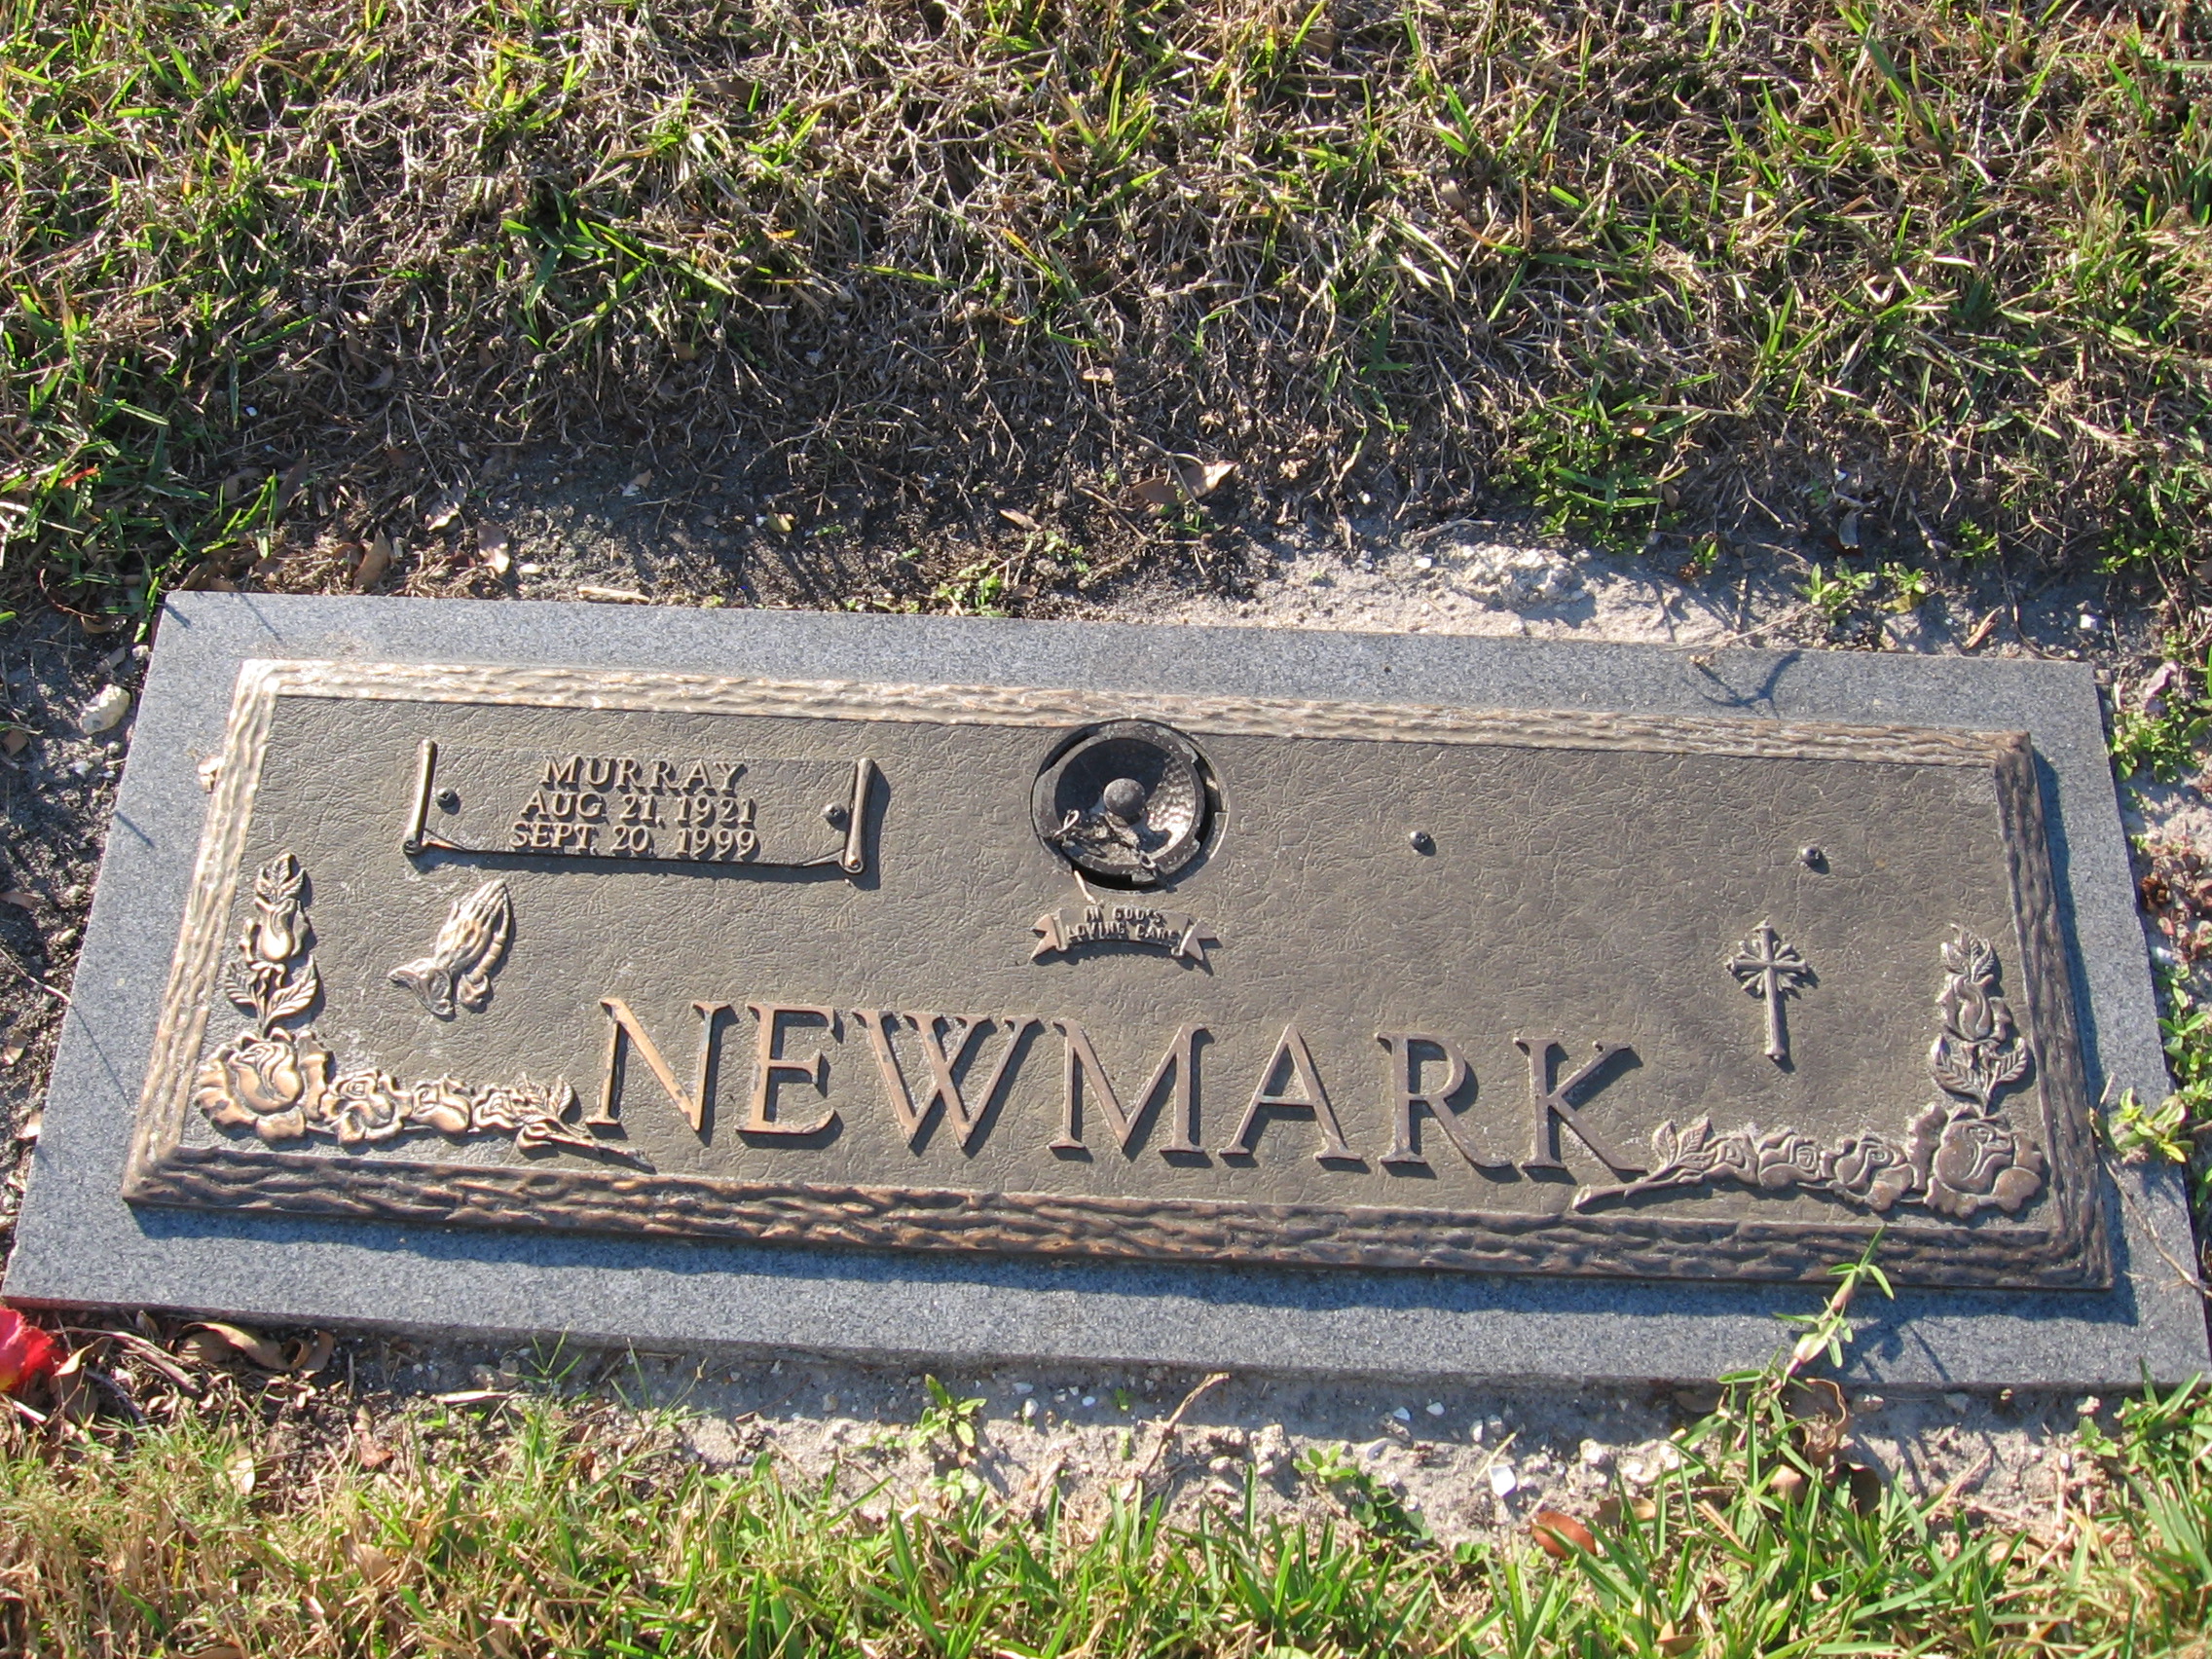 Murray Newmark